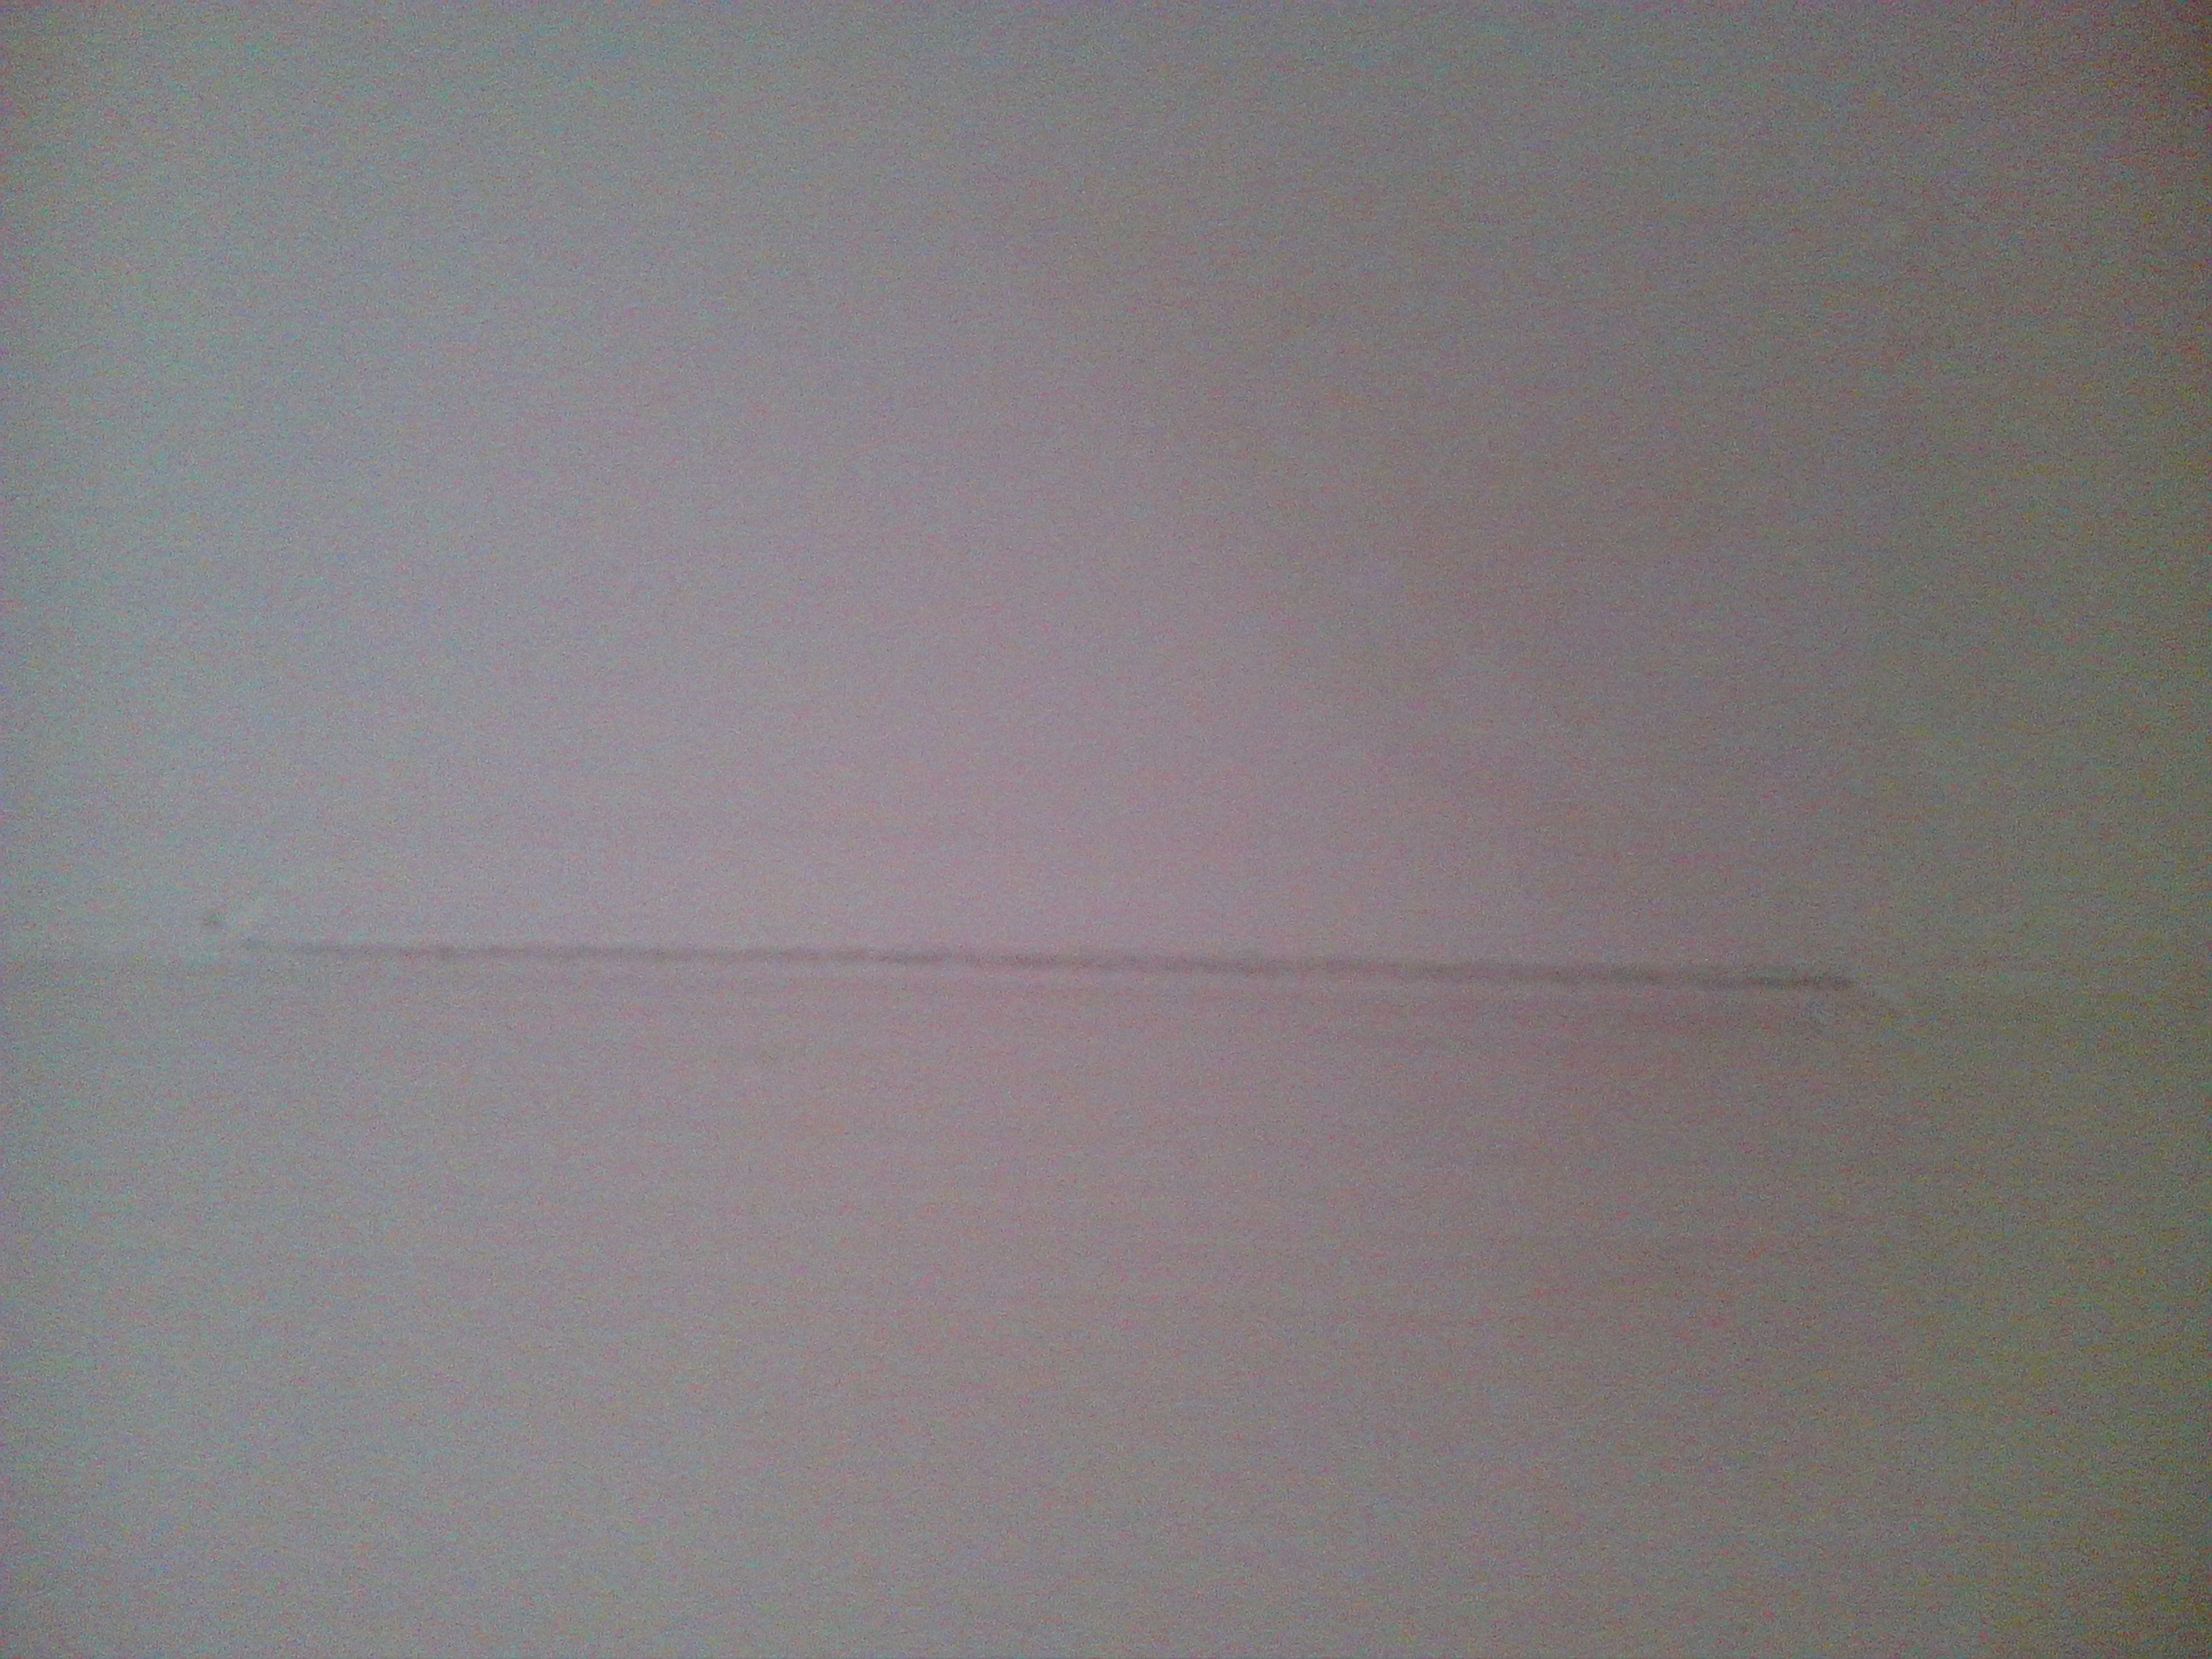 墙面刷乳胶漆，第二天所有墙面阴角开裂，是不是乳胶漆质量问题?